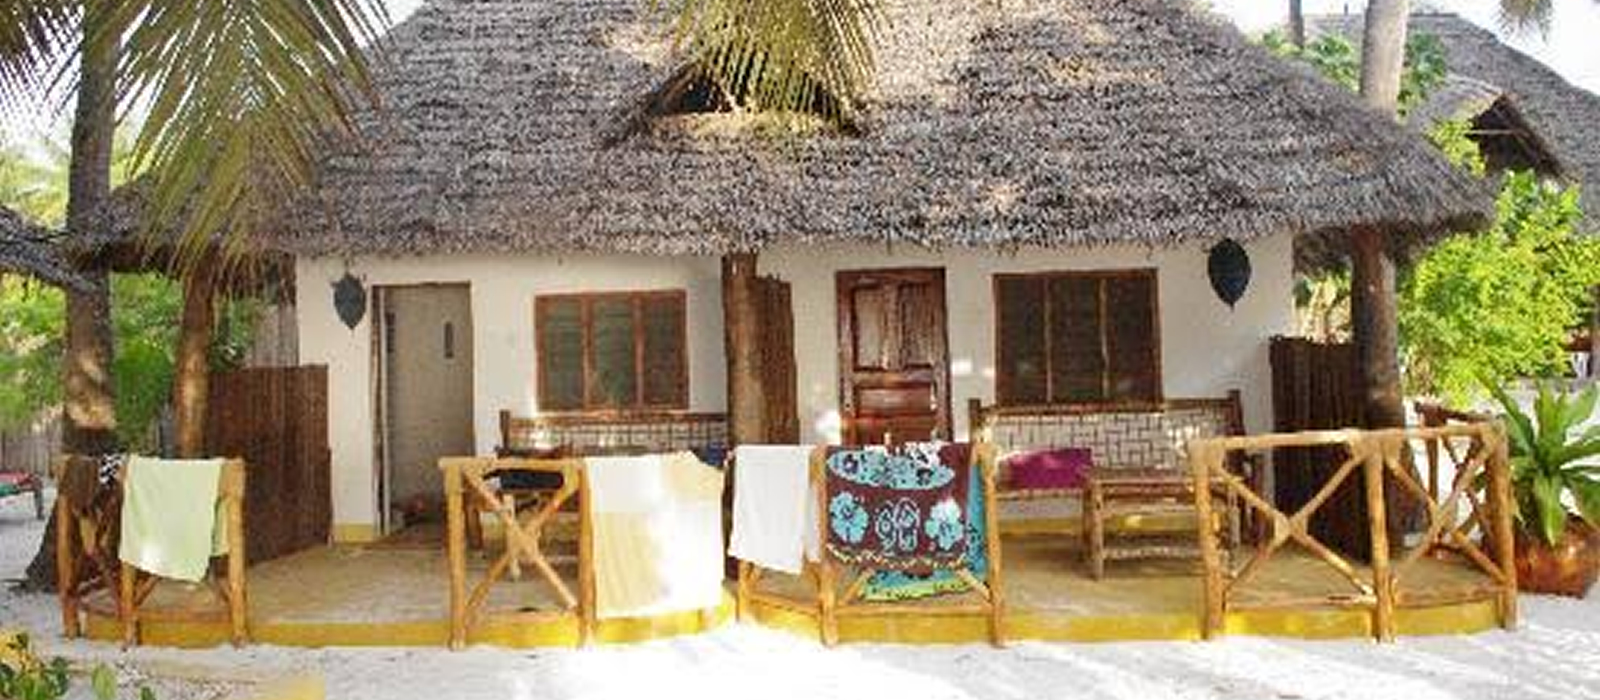 accommodation garba resort malindi mombasa